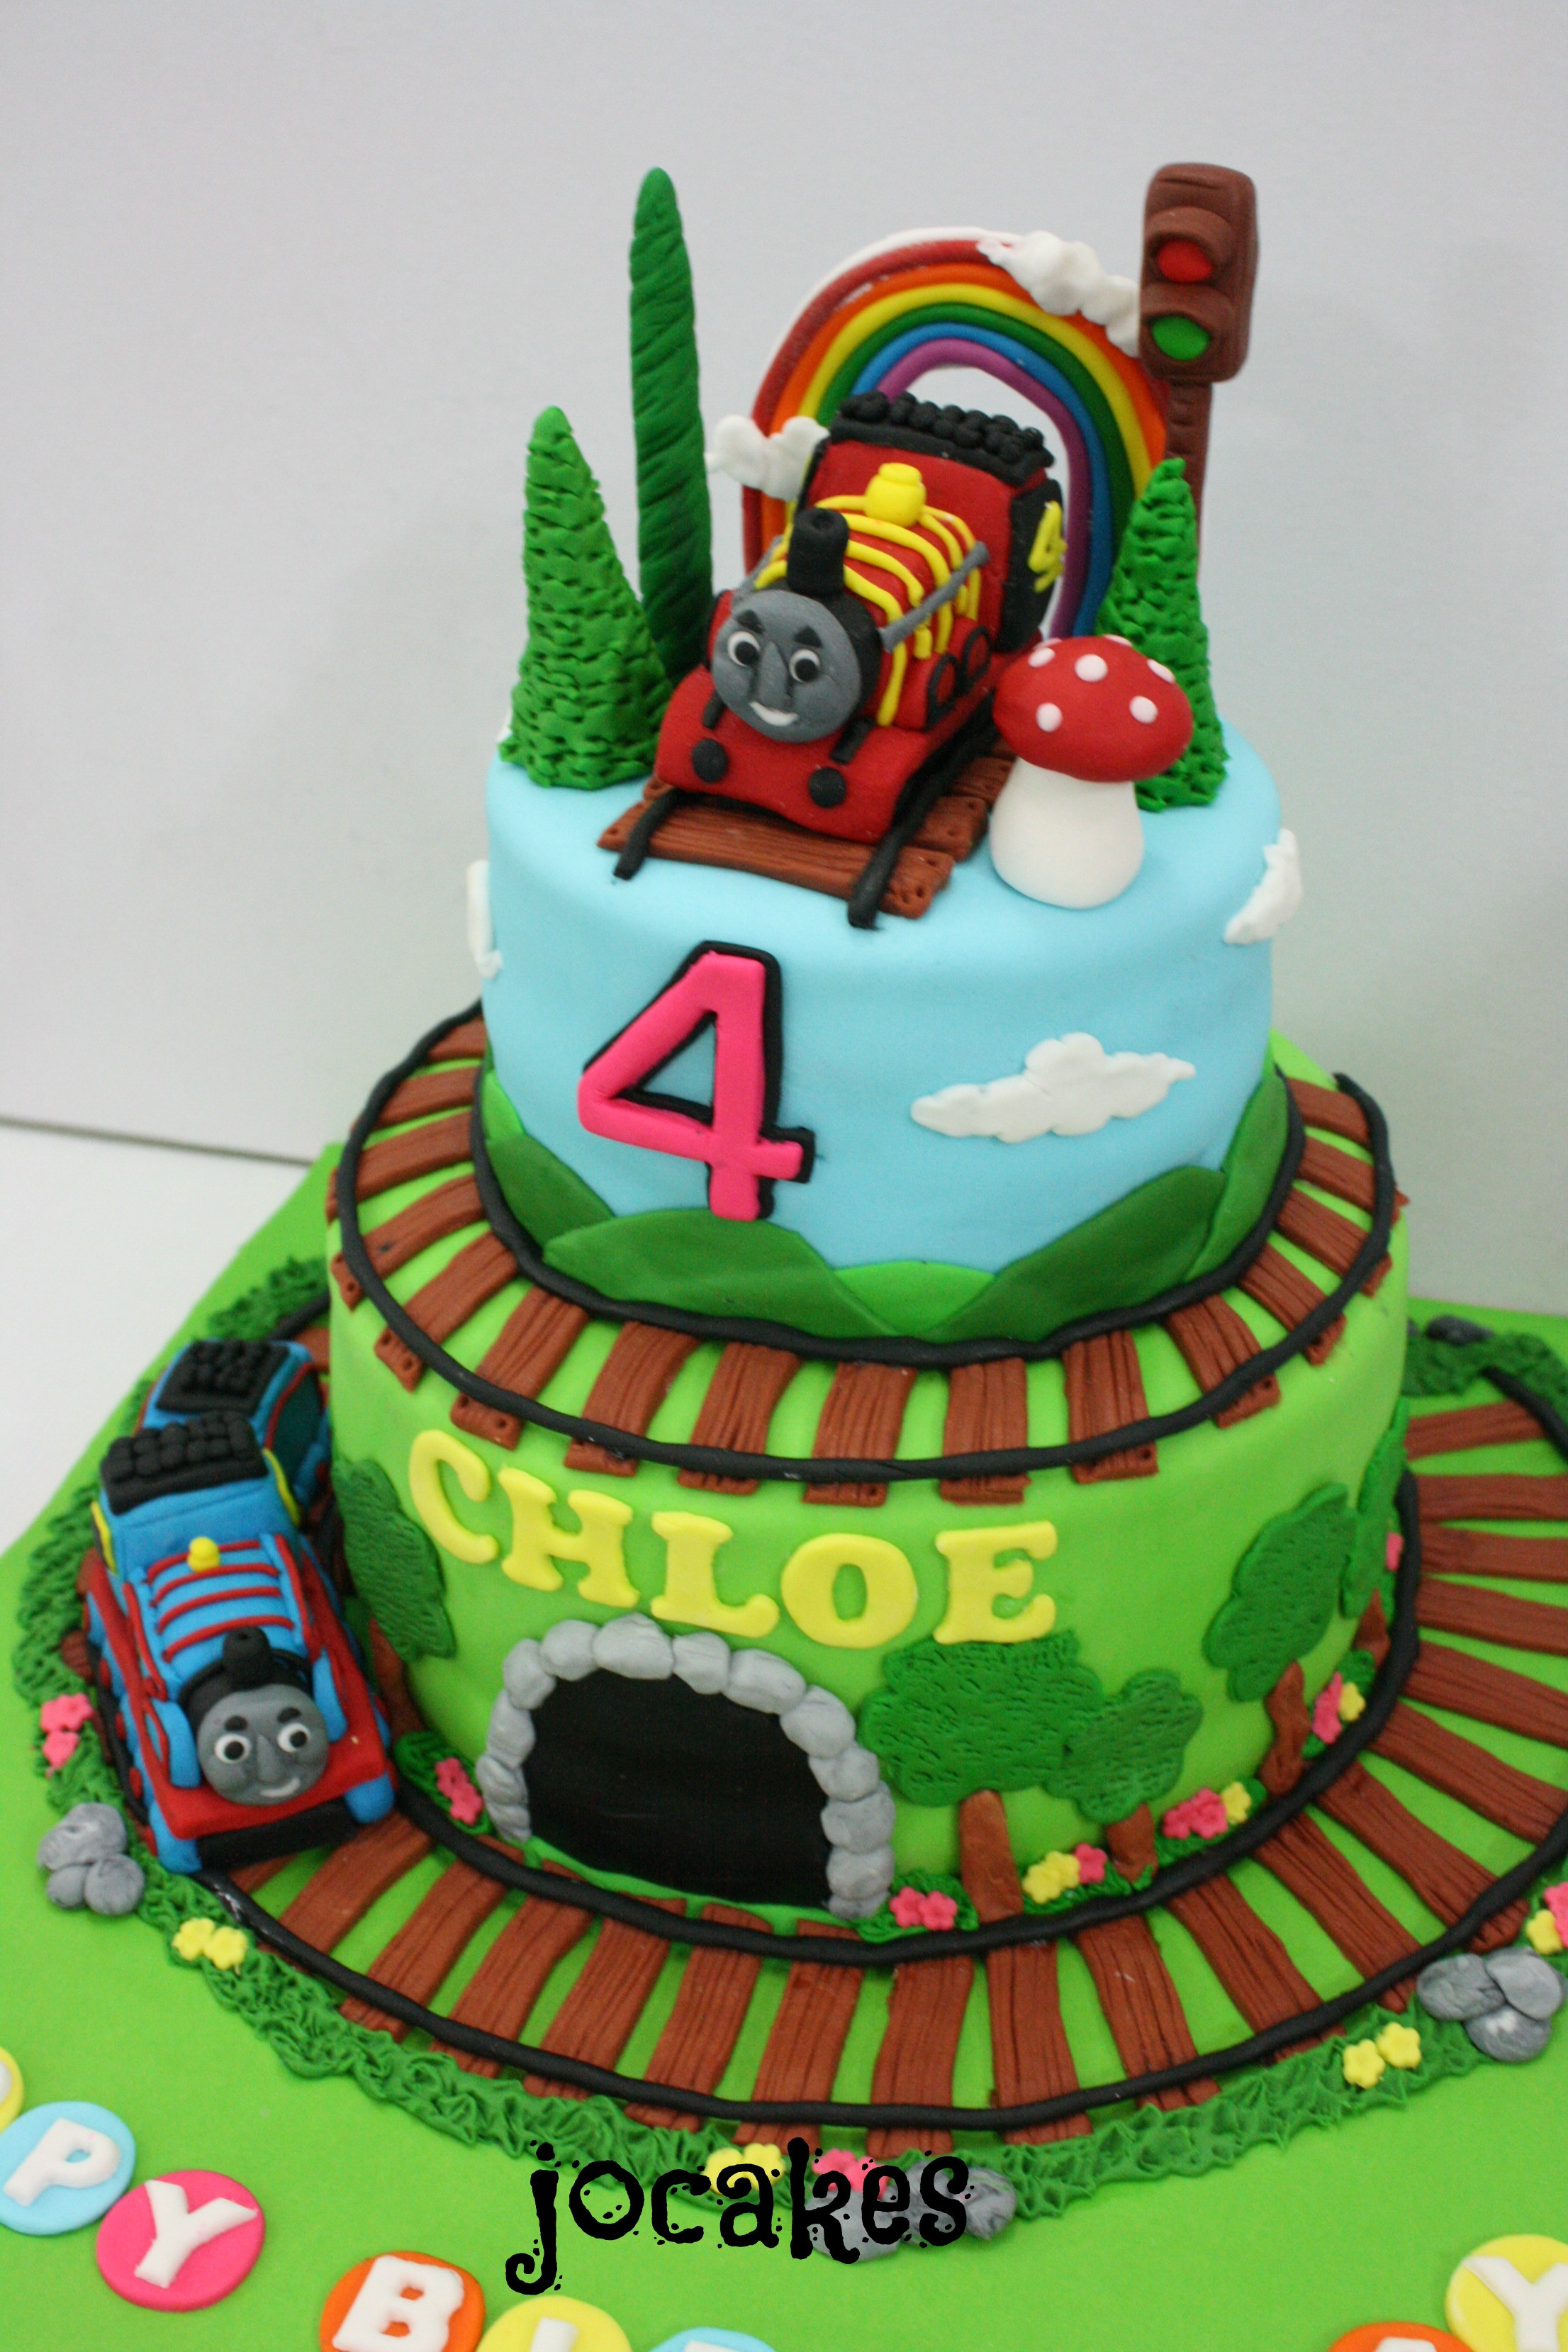 Best ideas about Thomas The Train Birthday Cake
. Save or Pin Thomas the train cake jocakes Now.